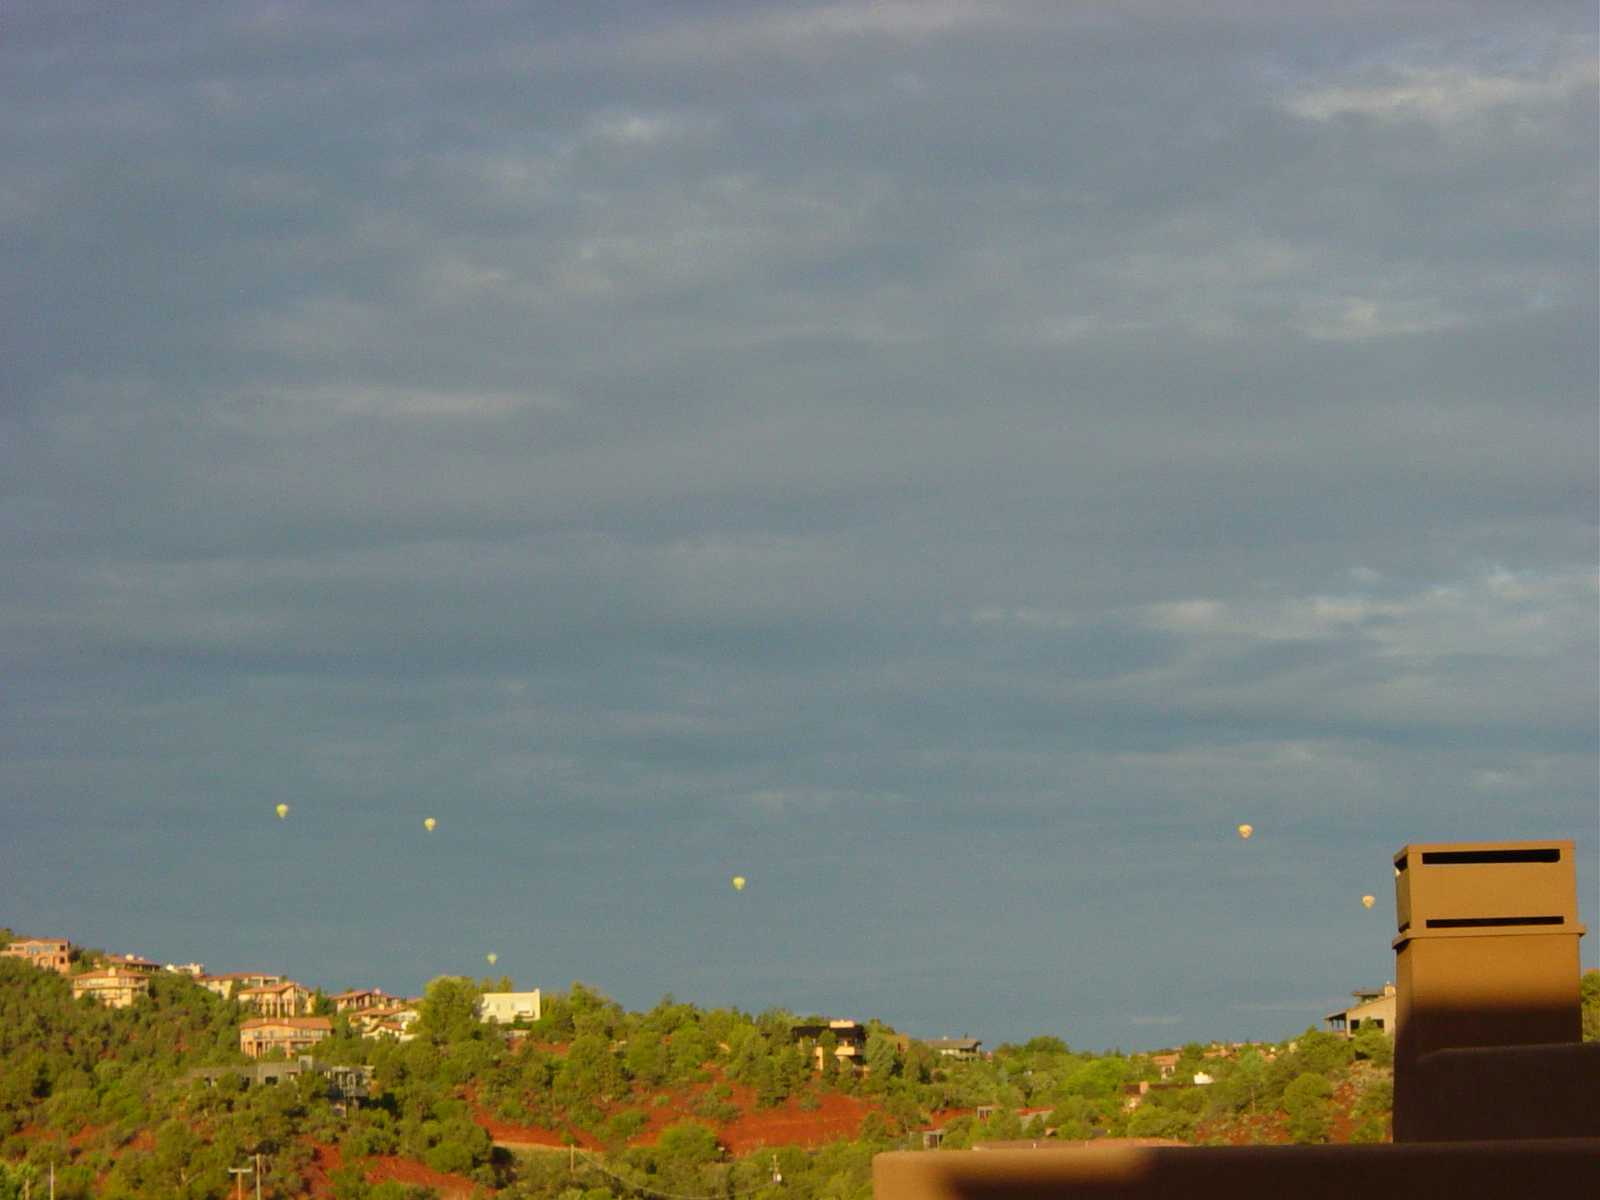 Early morning hot air balloons